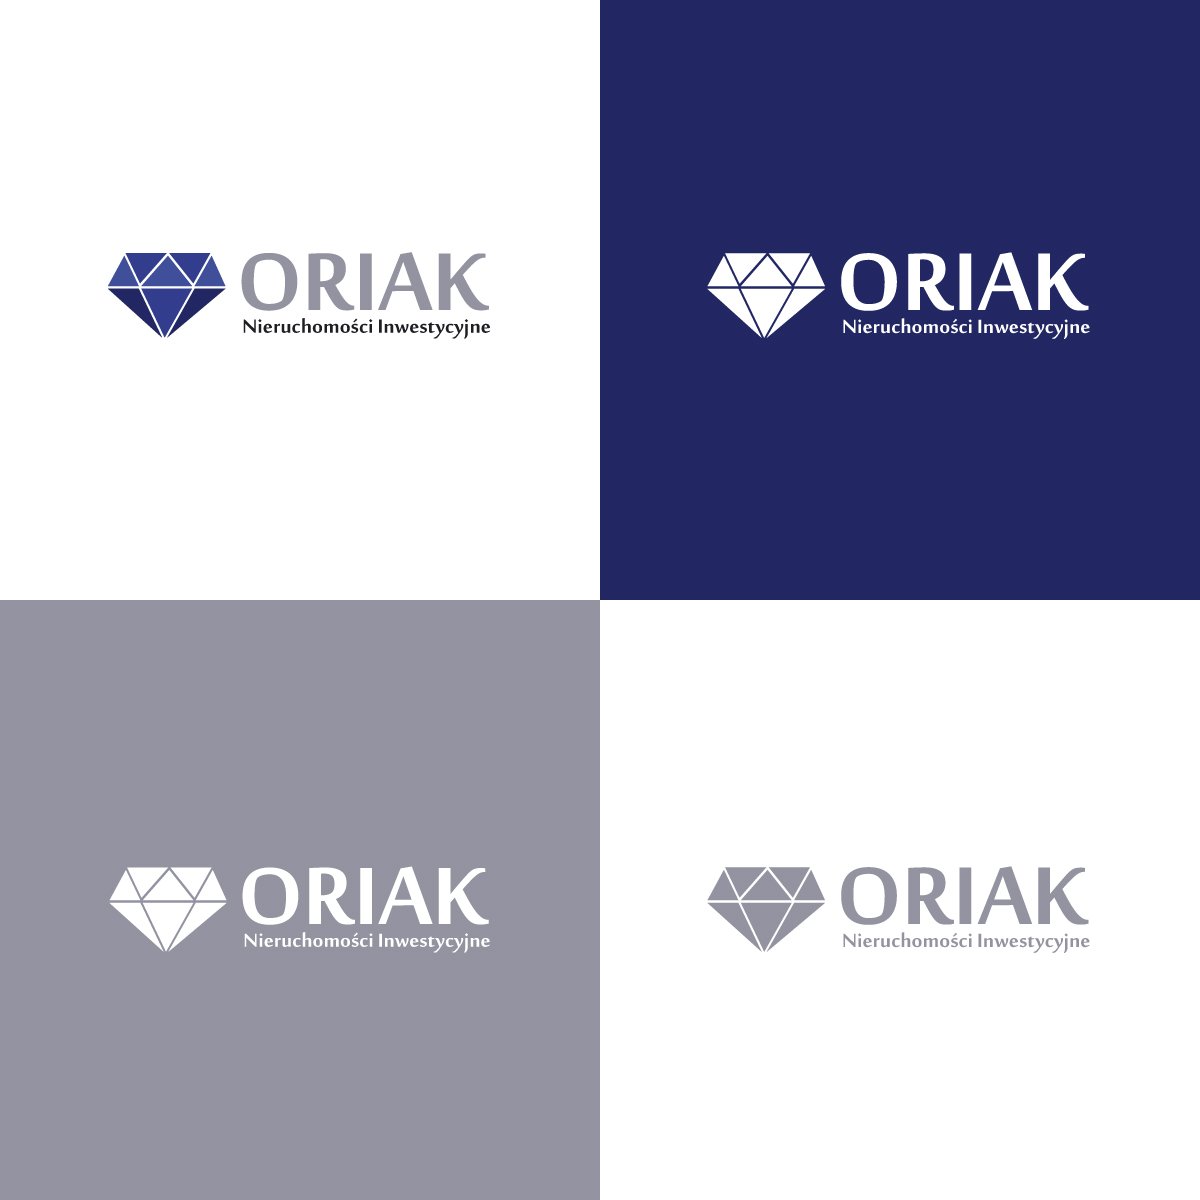 Oriak